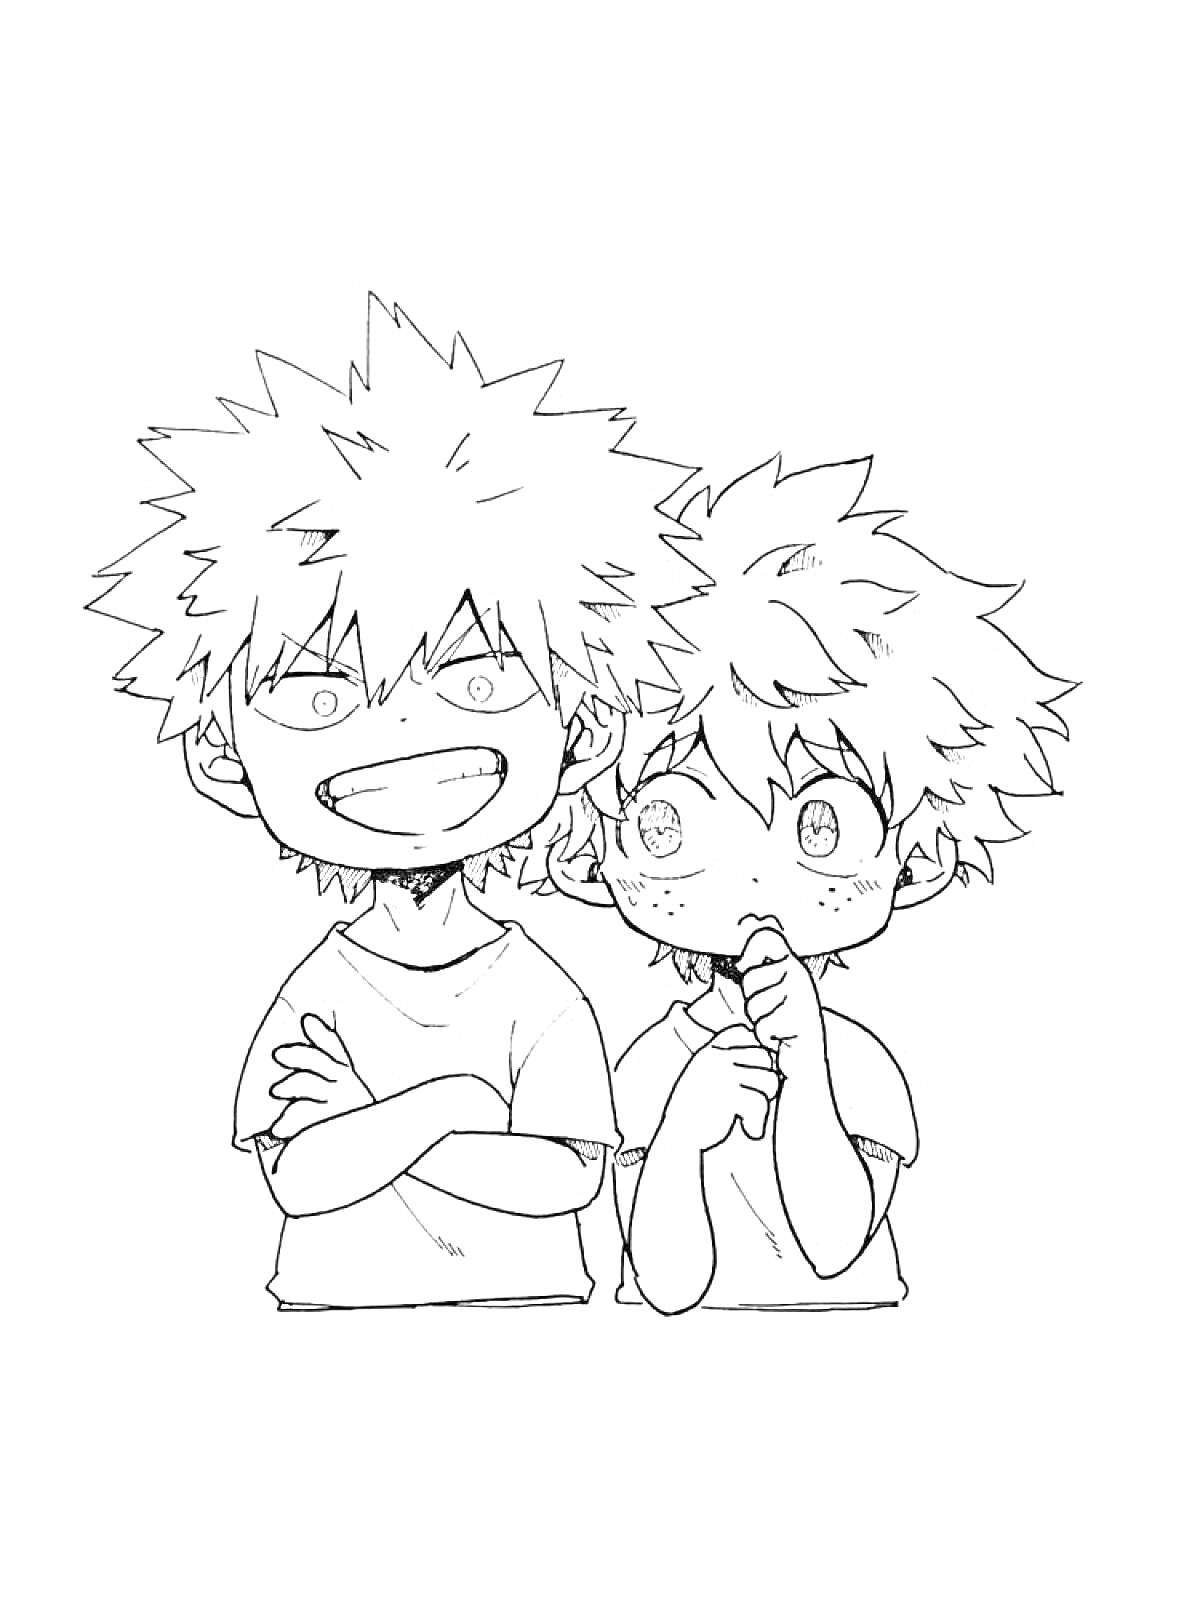 Раскраска Два мальчика с колючими волосами в футболках, один улыбающийся, другой задумчивый, 